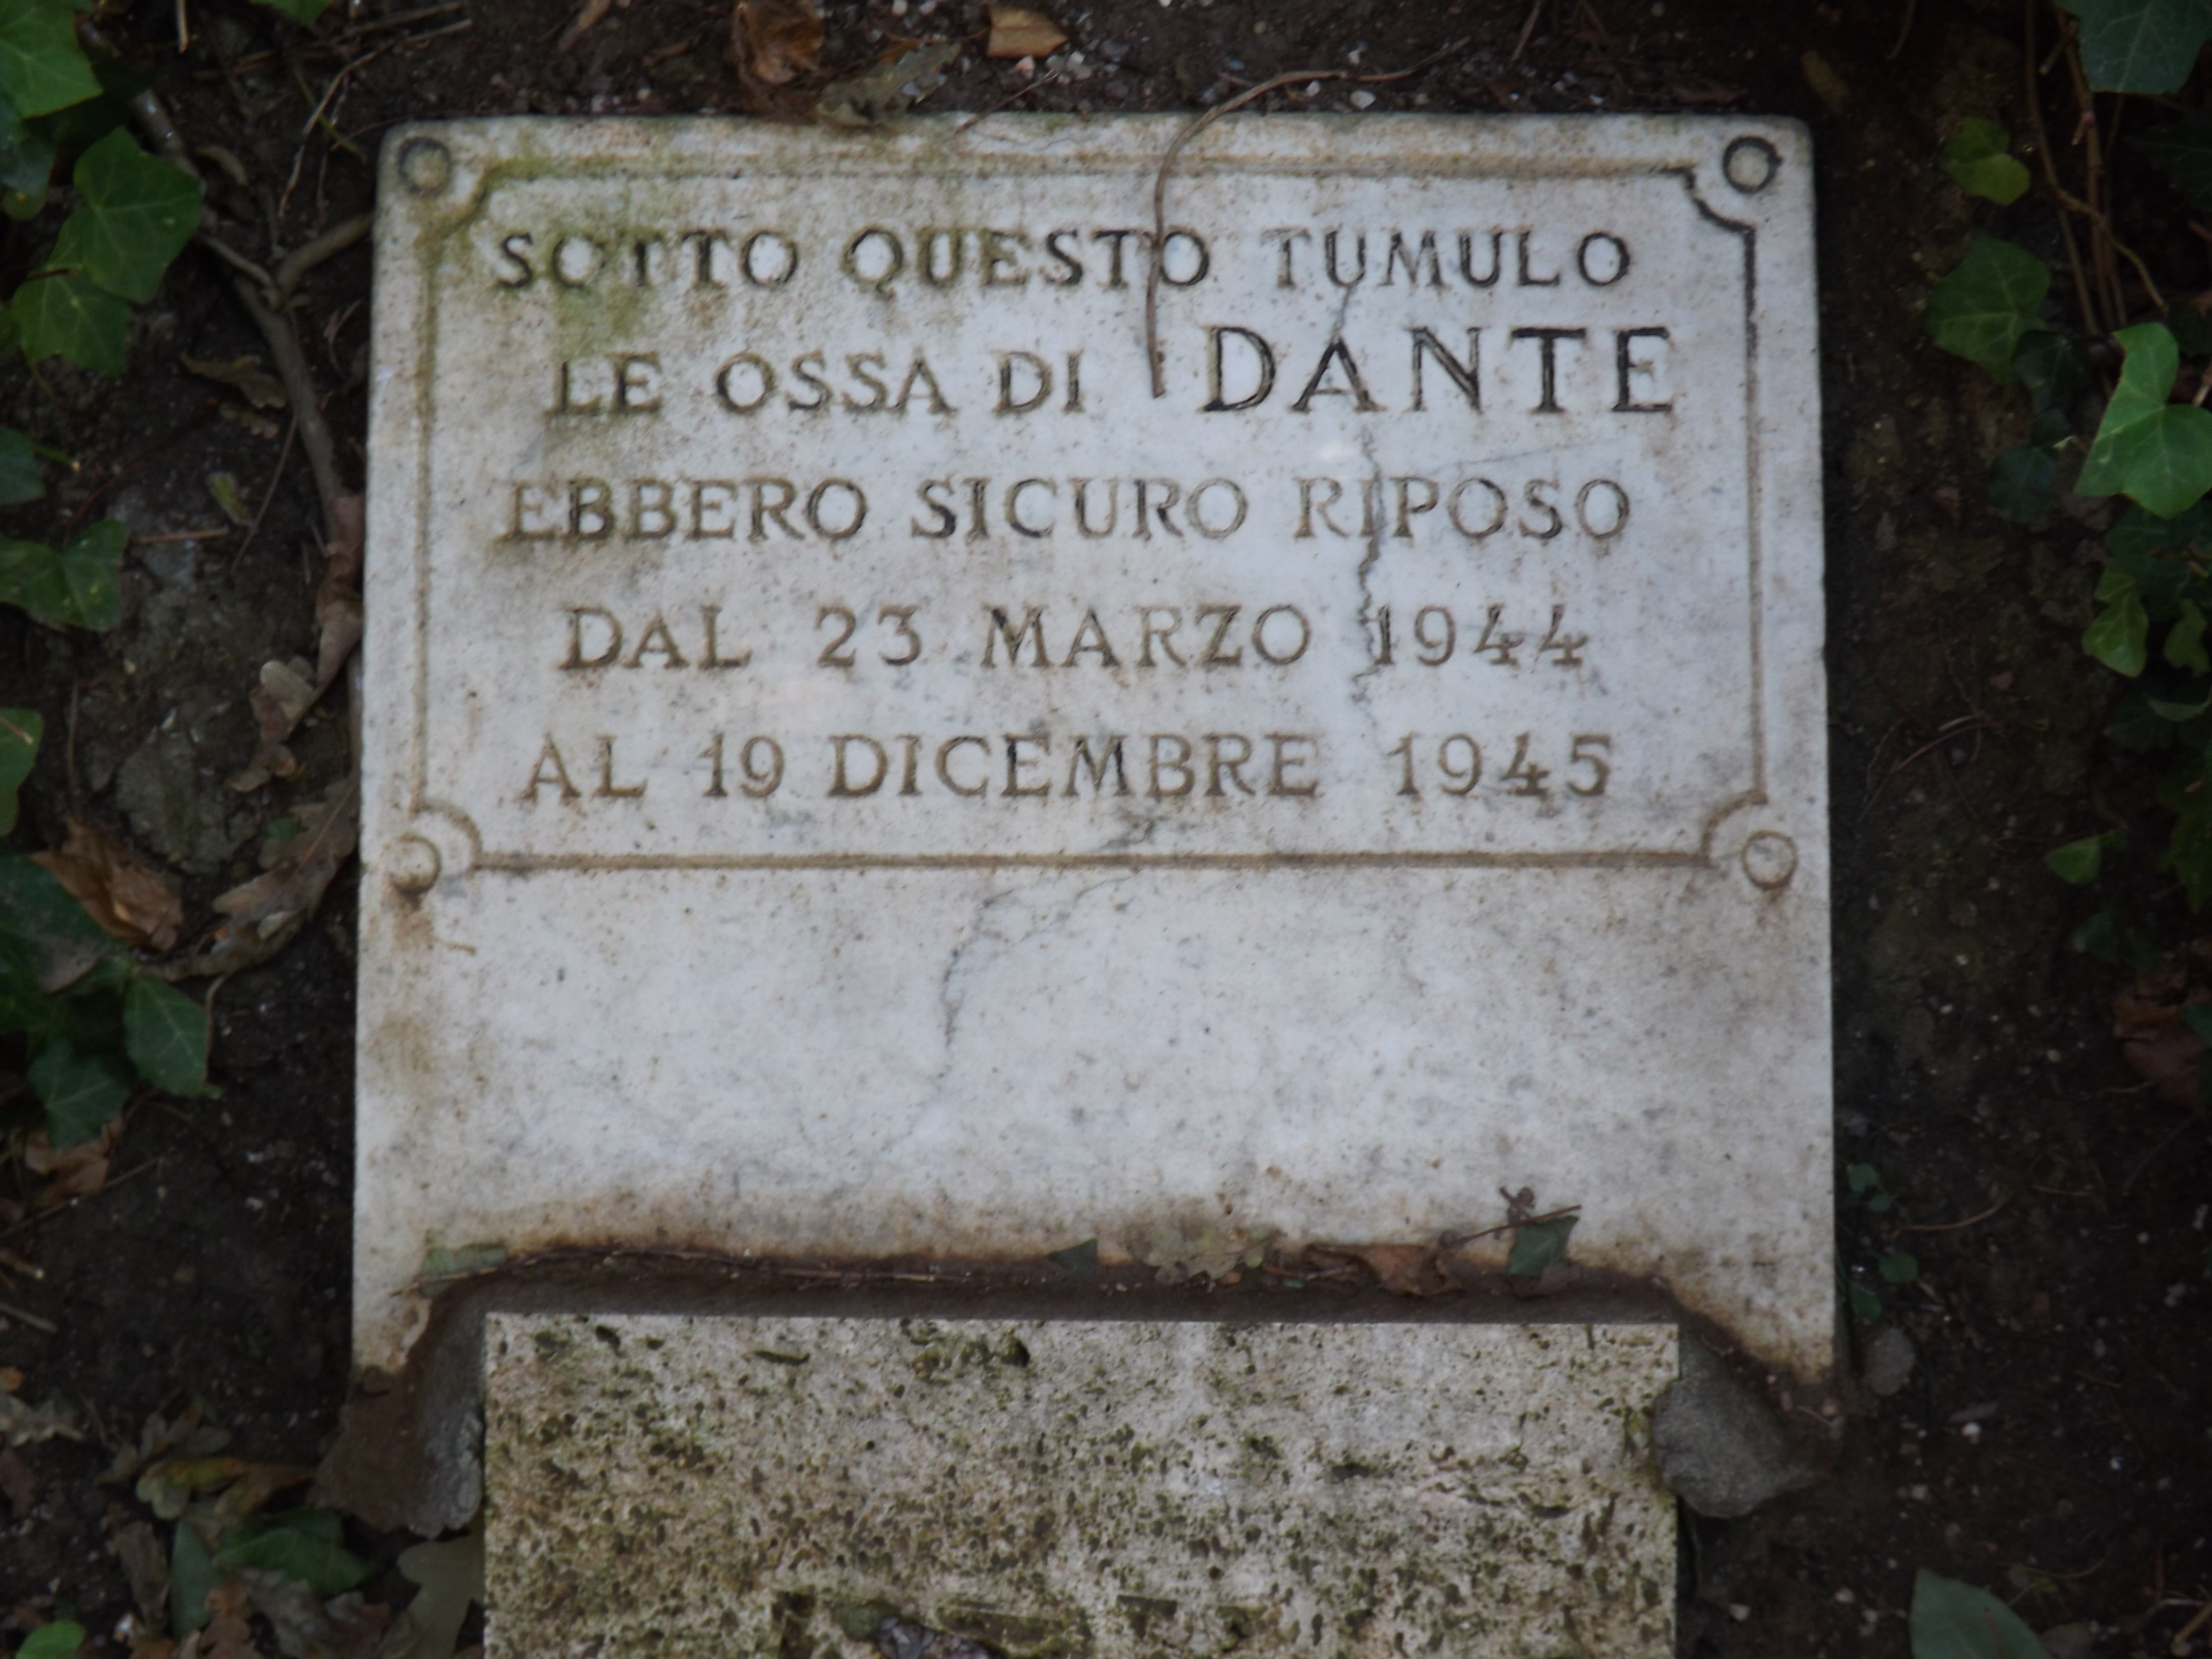 photo: https://upload.wikimedia.org/wikipedia/commons/3/3e/Lapide_di_Dante.jpg